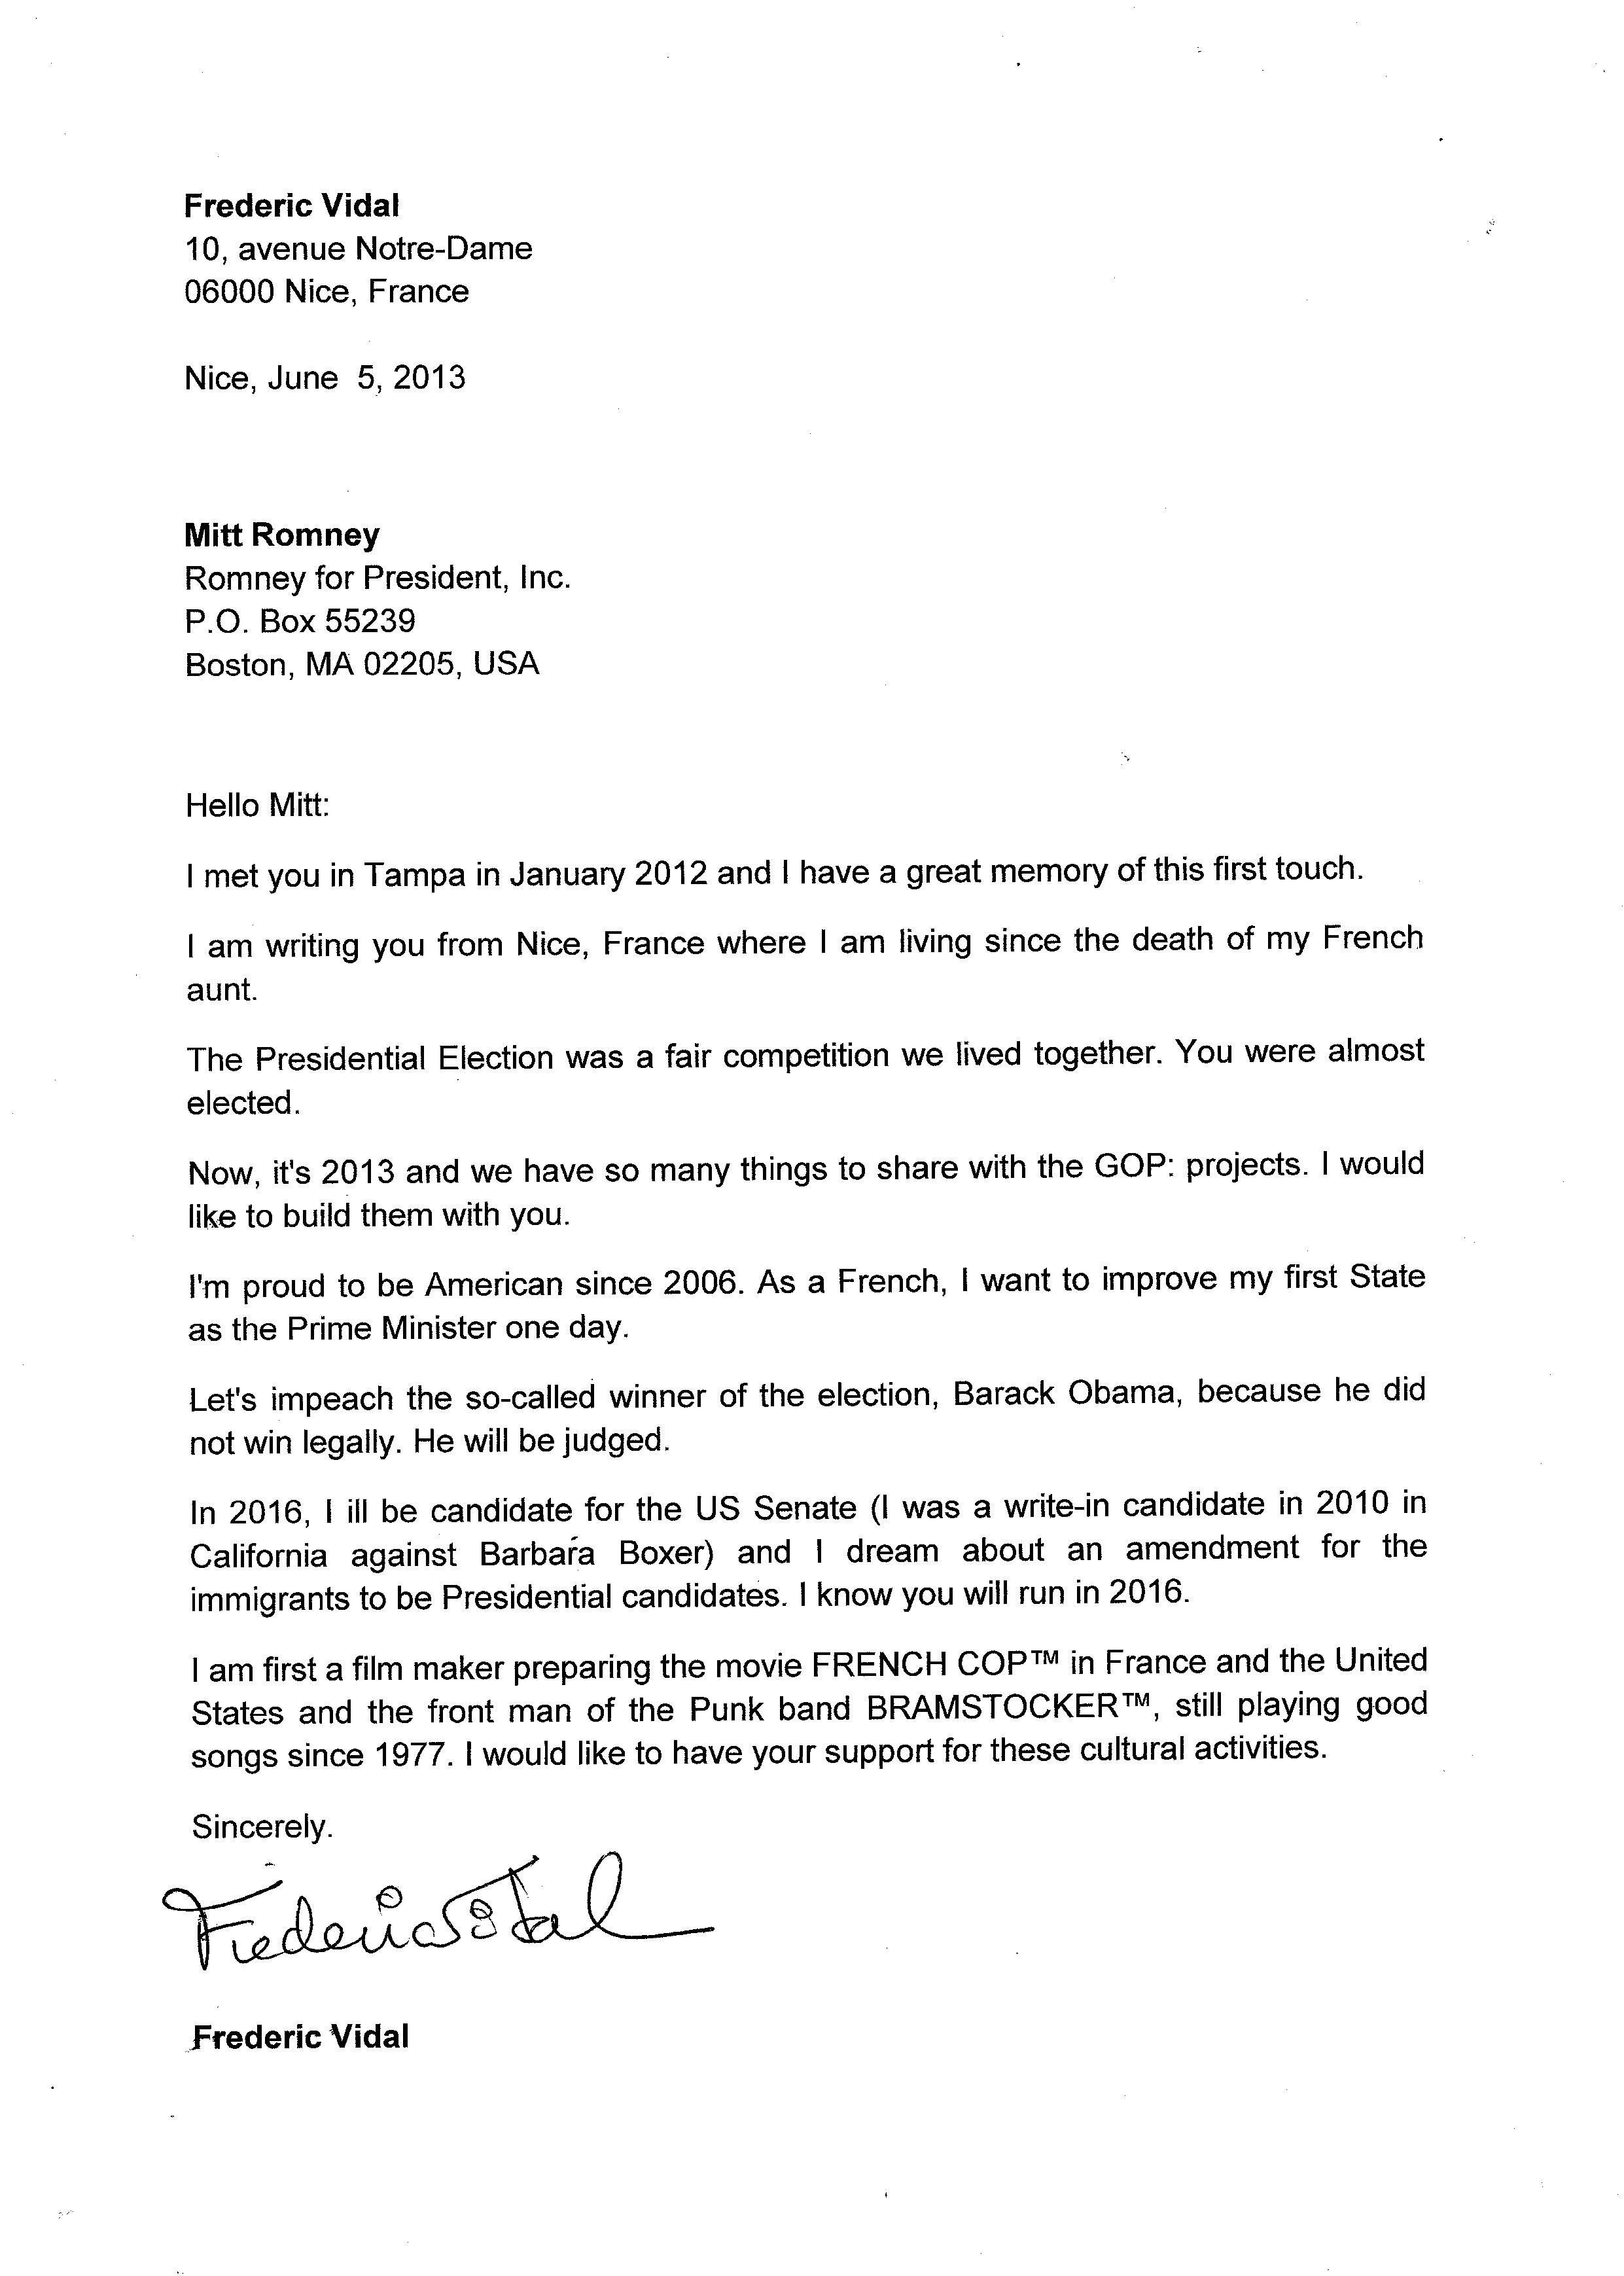 Frederic Vidal Letter to Mitt Romney.  Dr. Fred Vidal Log